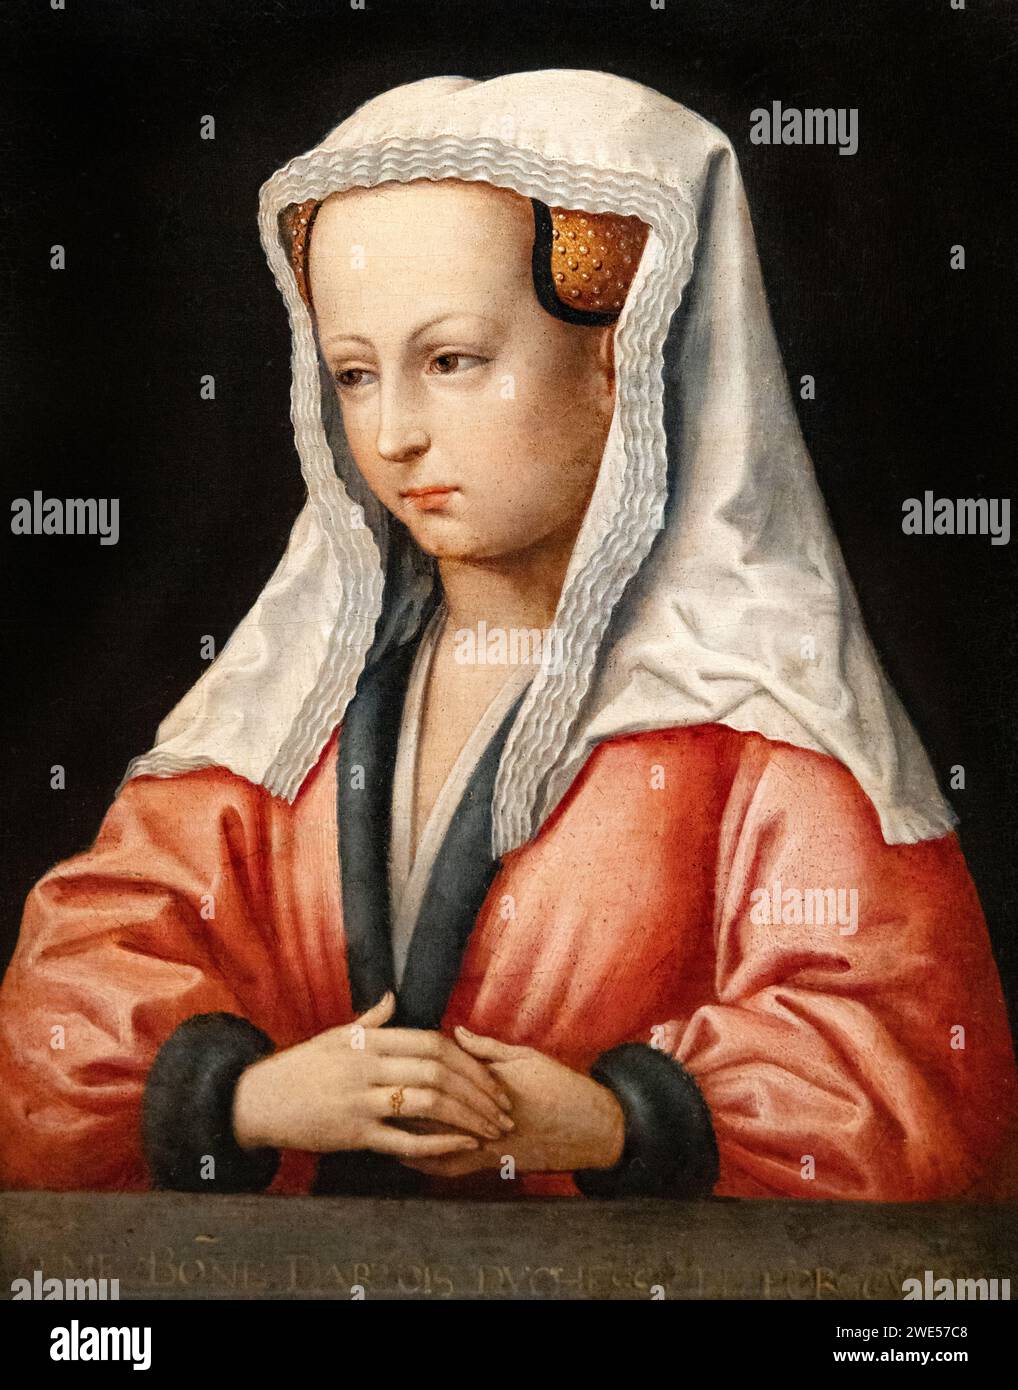 Copia dopo il dipinto di Jan van Eyck; Un ritratto di Bonne d'Artois (1396-1425); dipinto nel XVI secolo da motivi delle opere di Van Eycks. Foto Stock